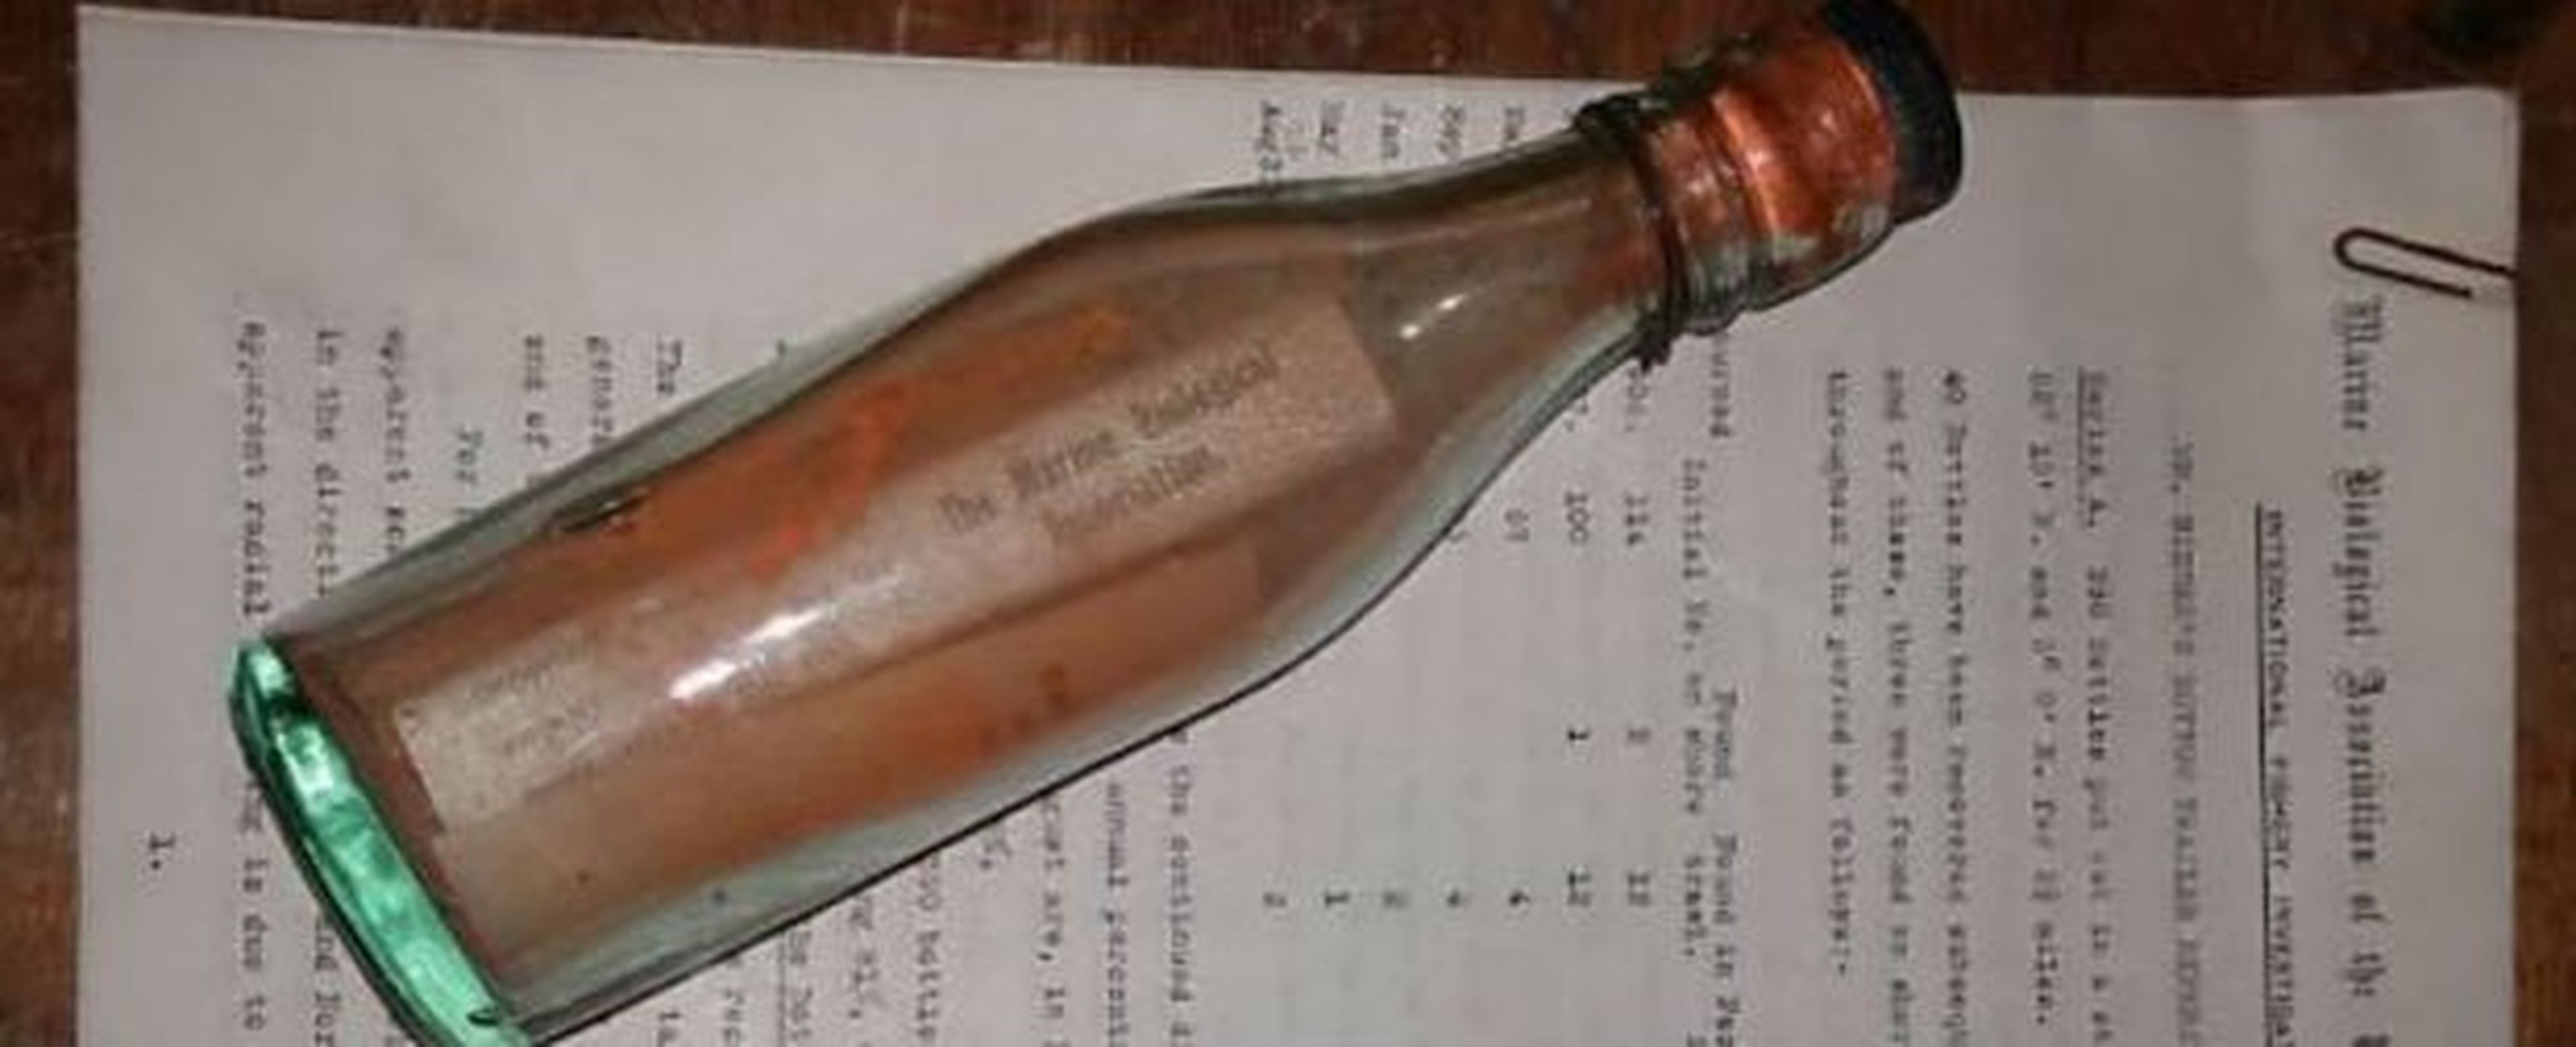 mensaje botella más antiguo